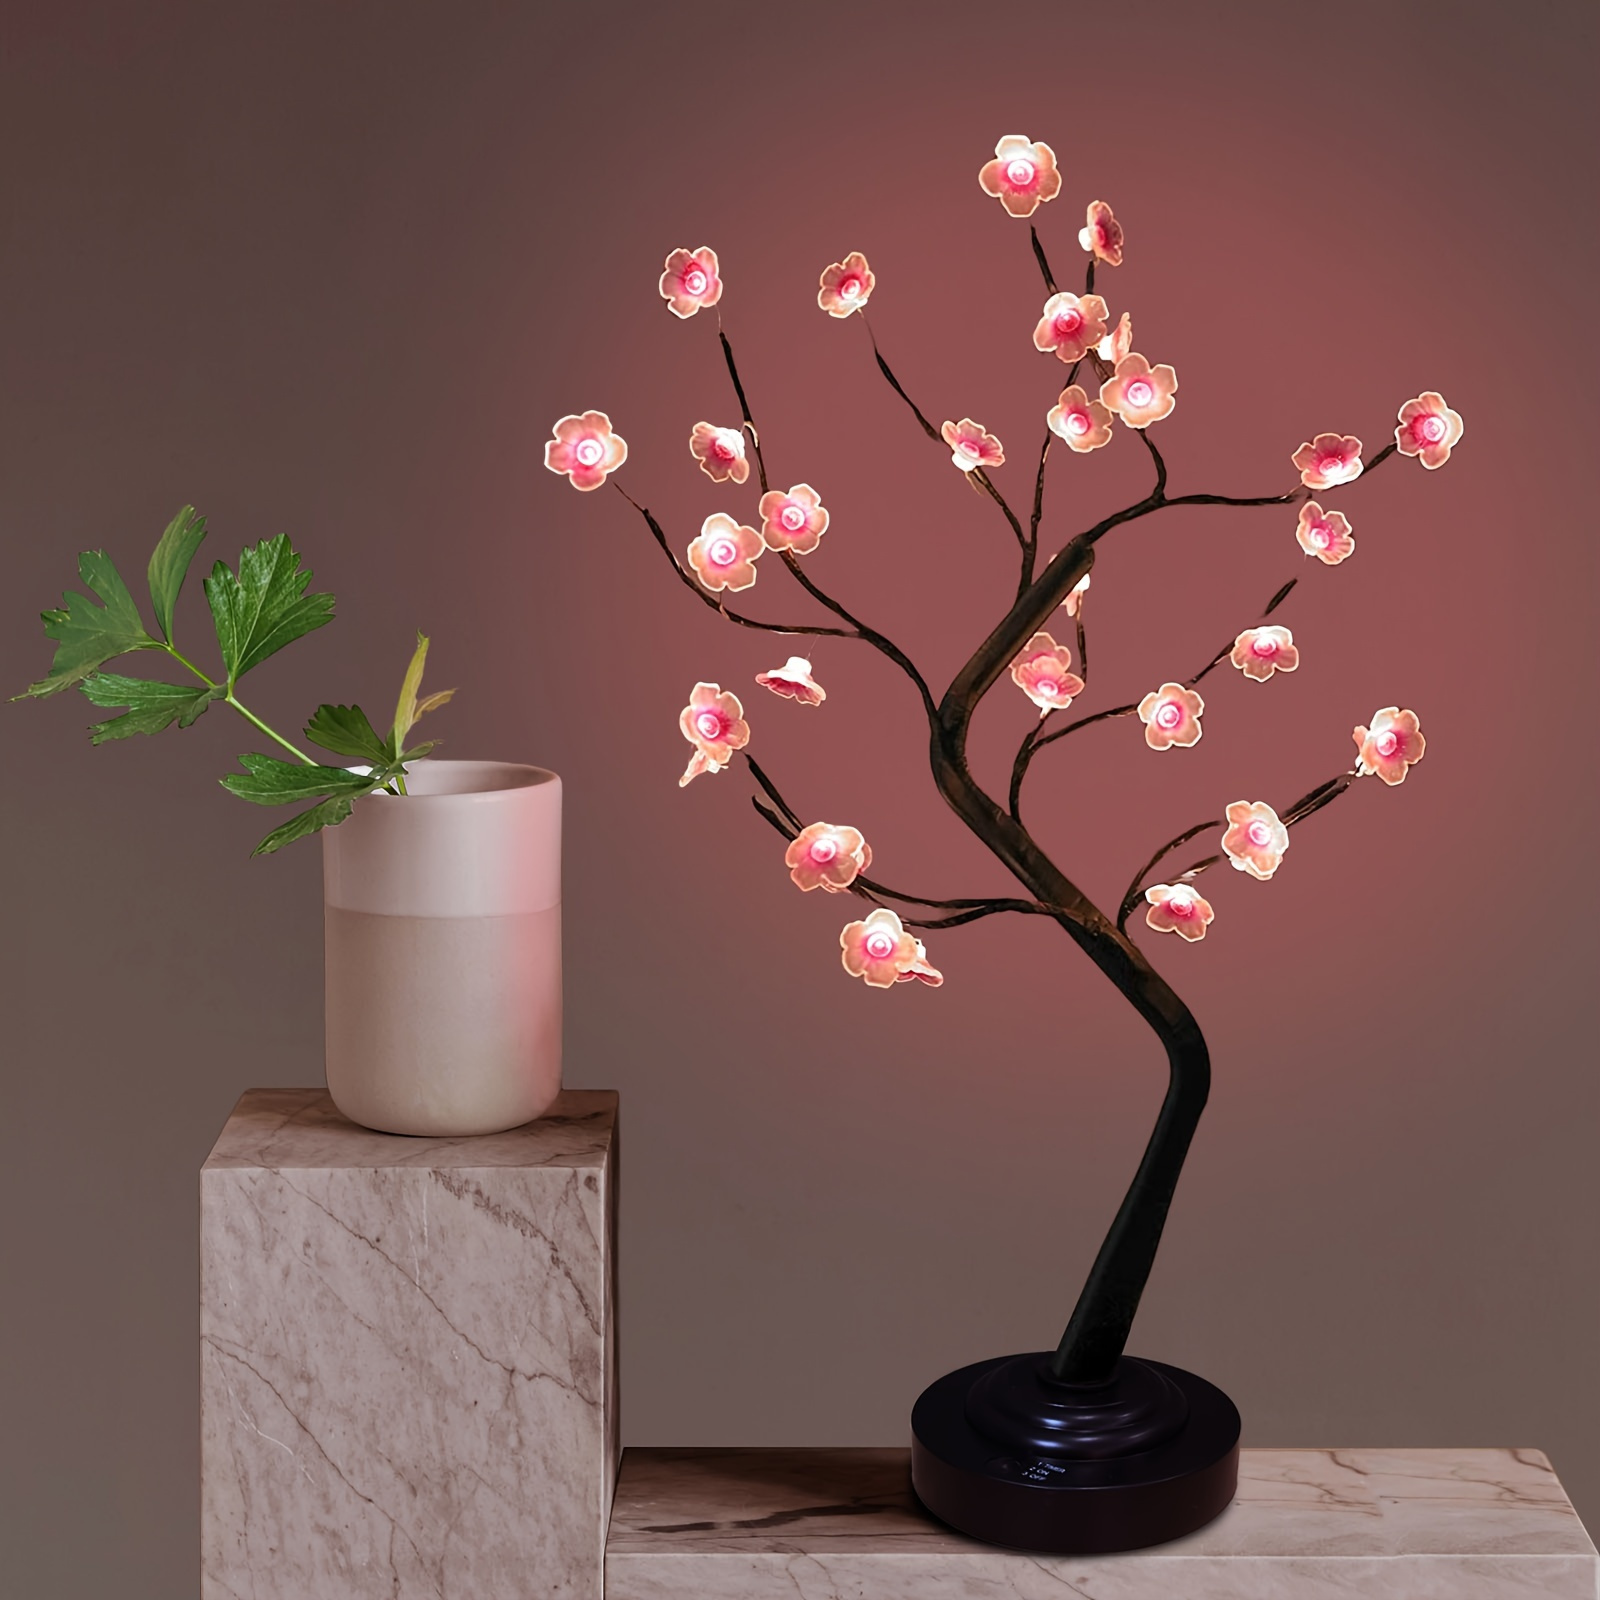 Aesthetic Design Mushroom Lamp Luminous Desktop Ornament for Home Decor